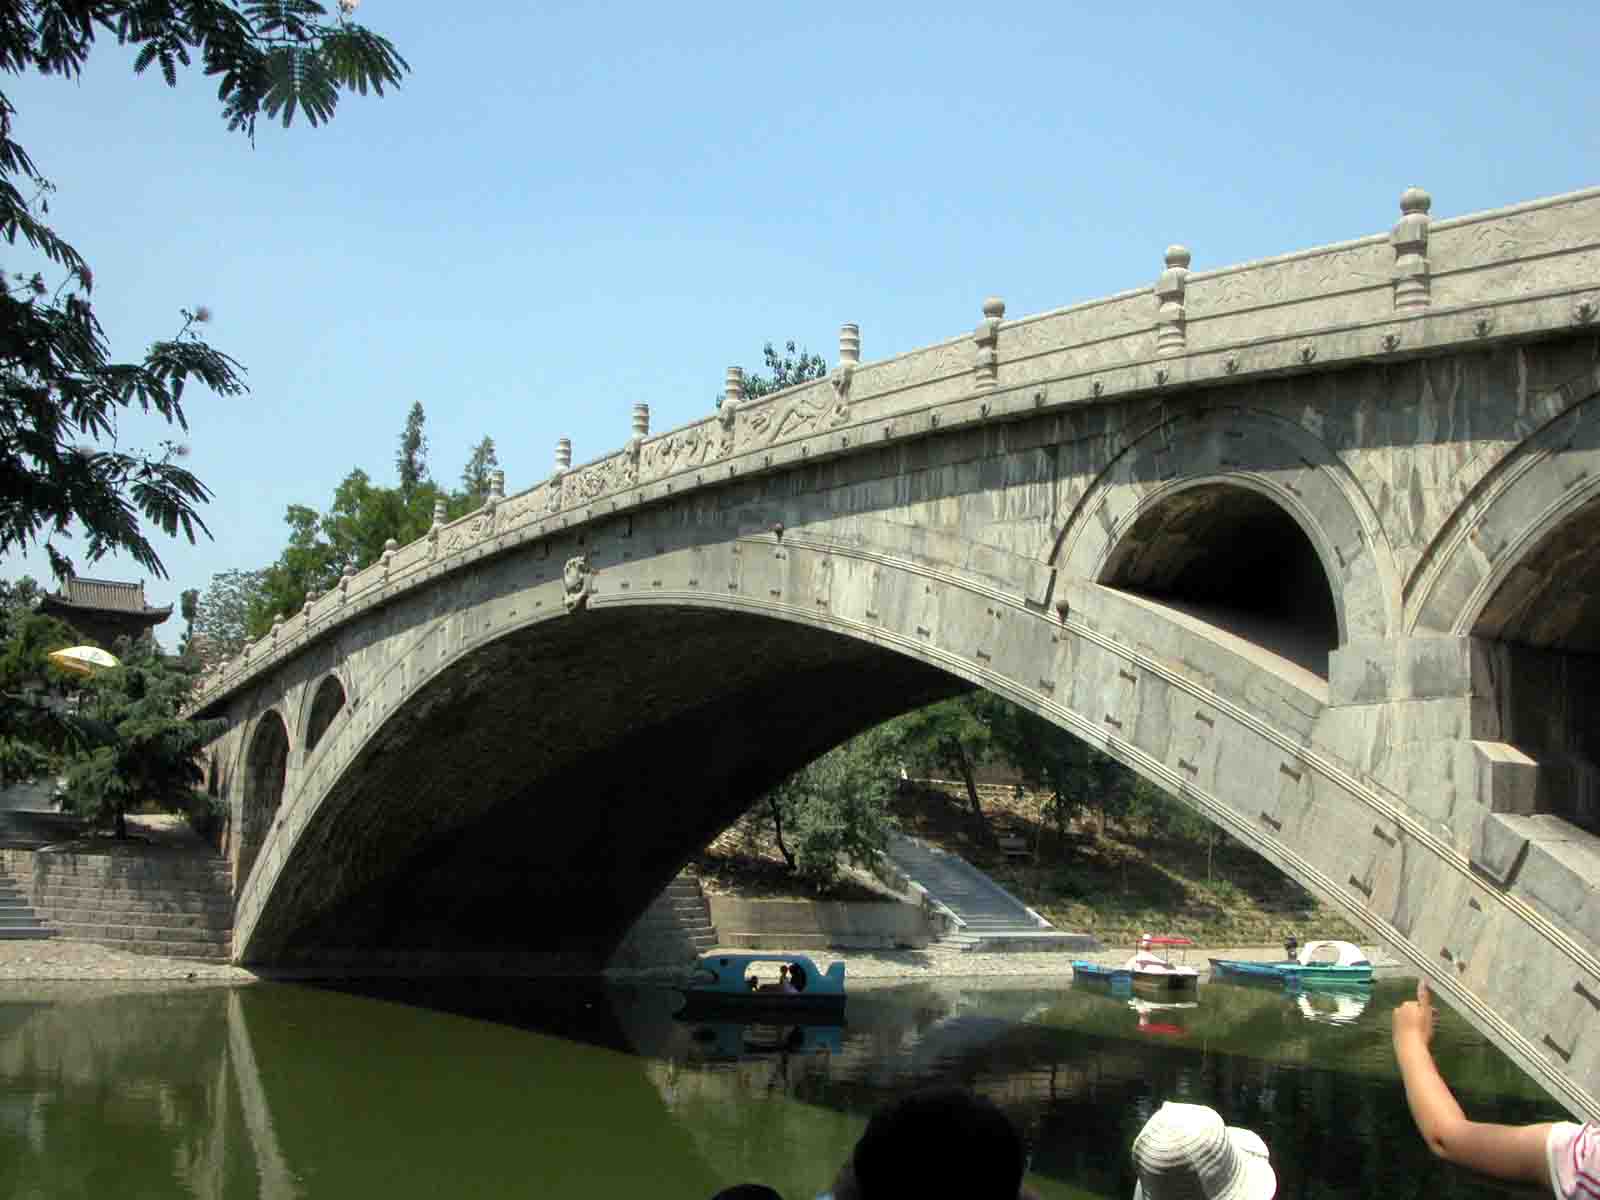 石拱橋(石質材料結構的拱形橋樑)